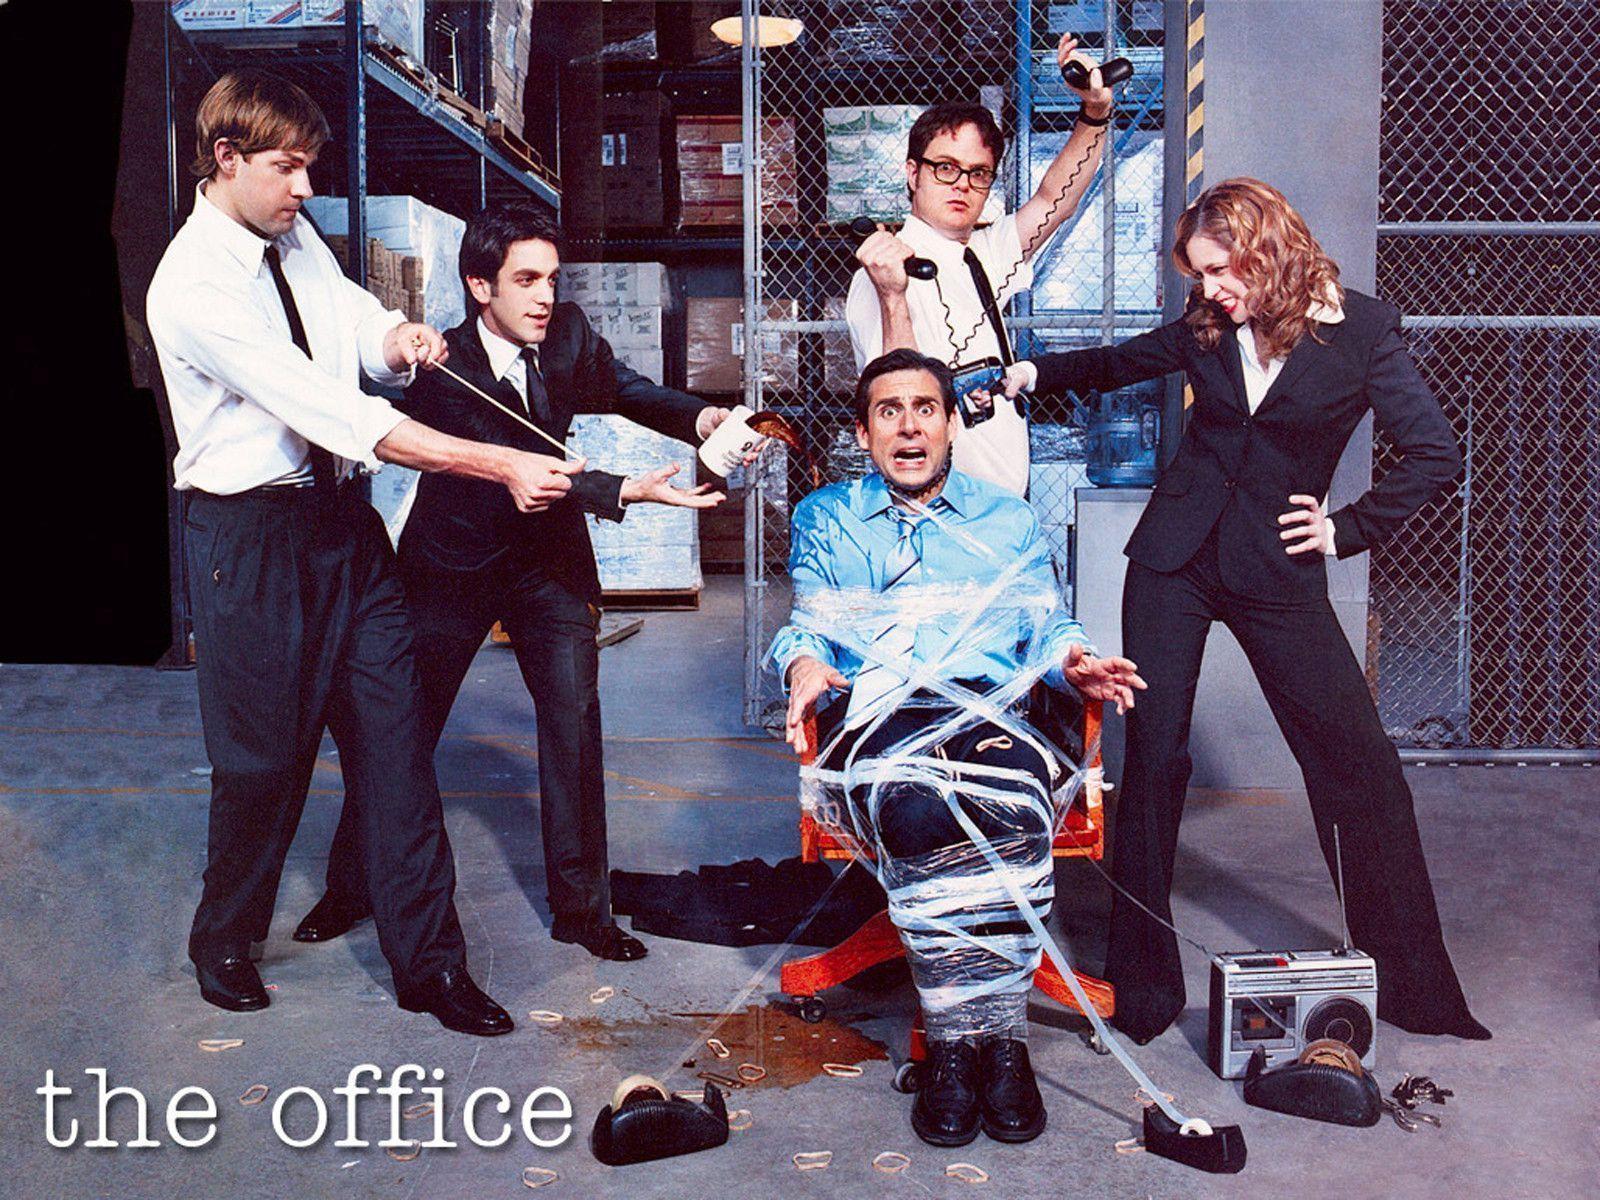 The Office (US) Wallpaper 19. Free HD Wallpaper Desktop